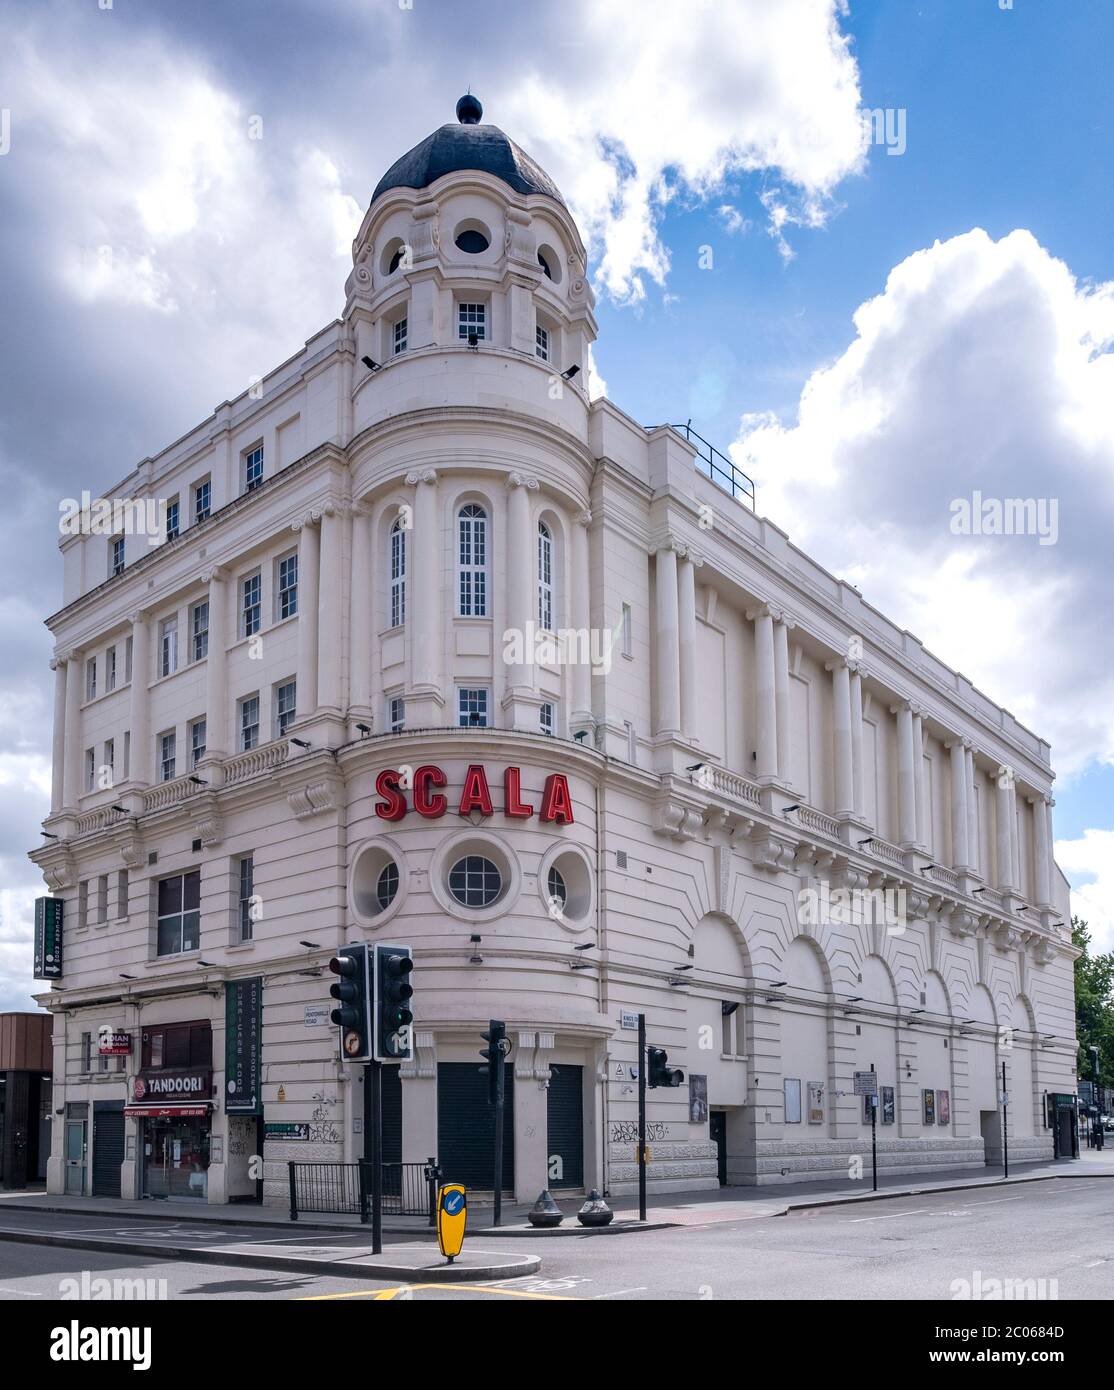 Scala, un ancien cinéma transformé en discothèque et lieu de concerts à Pentonville Road, Londres, en Angleterre, près de la gare de King's Cross. Banque D'Images